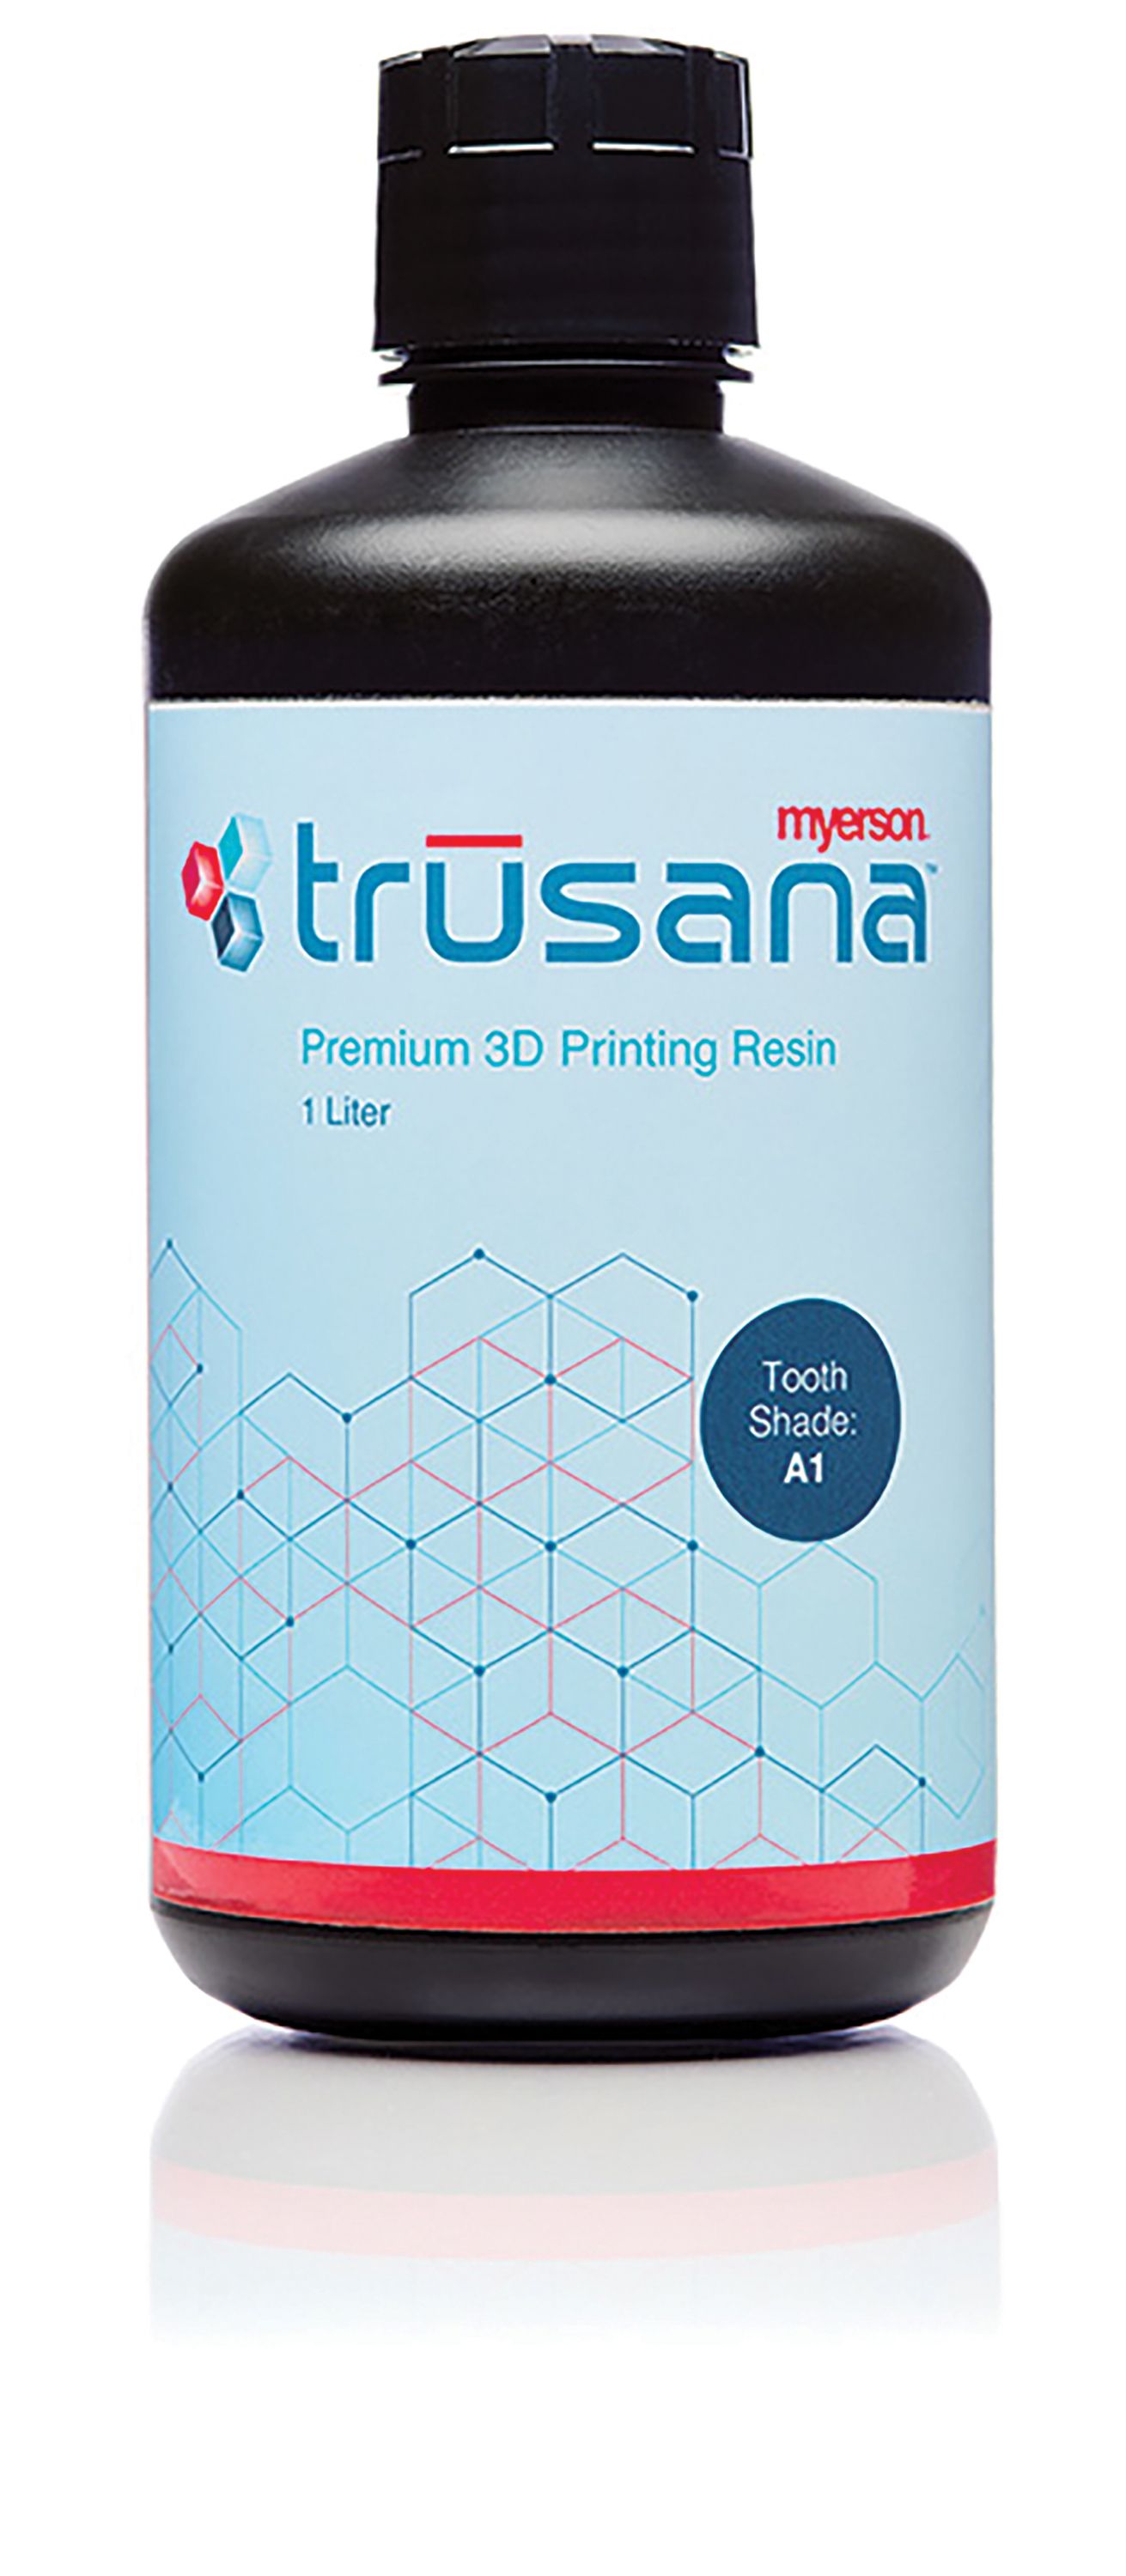 Trusana Premium 3D Printing Resin